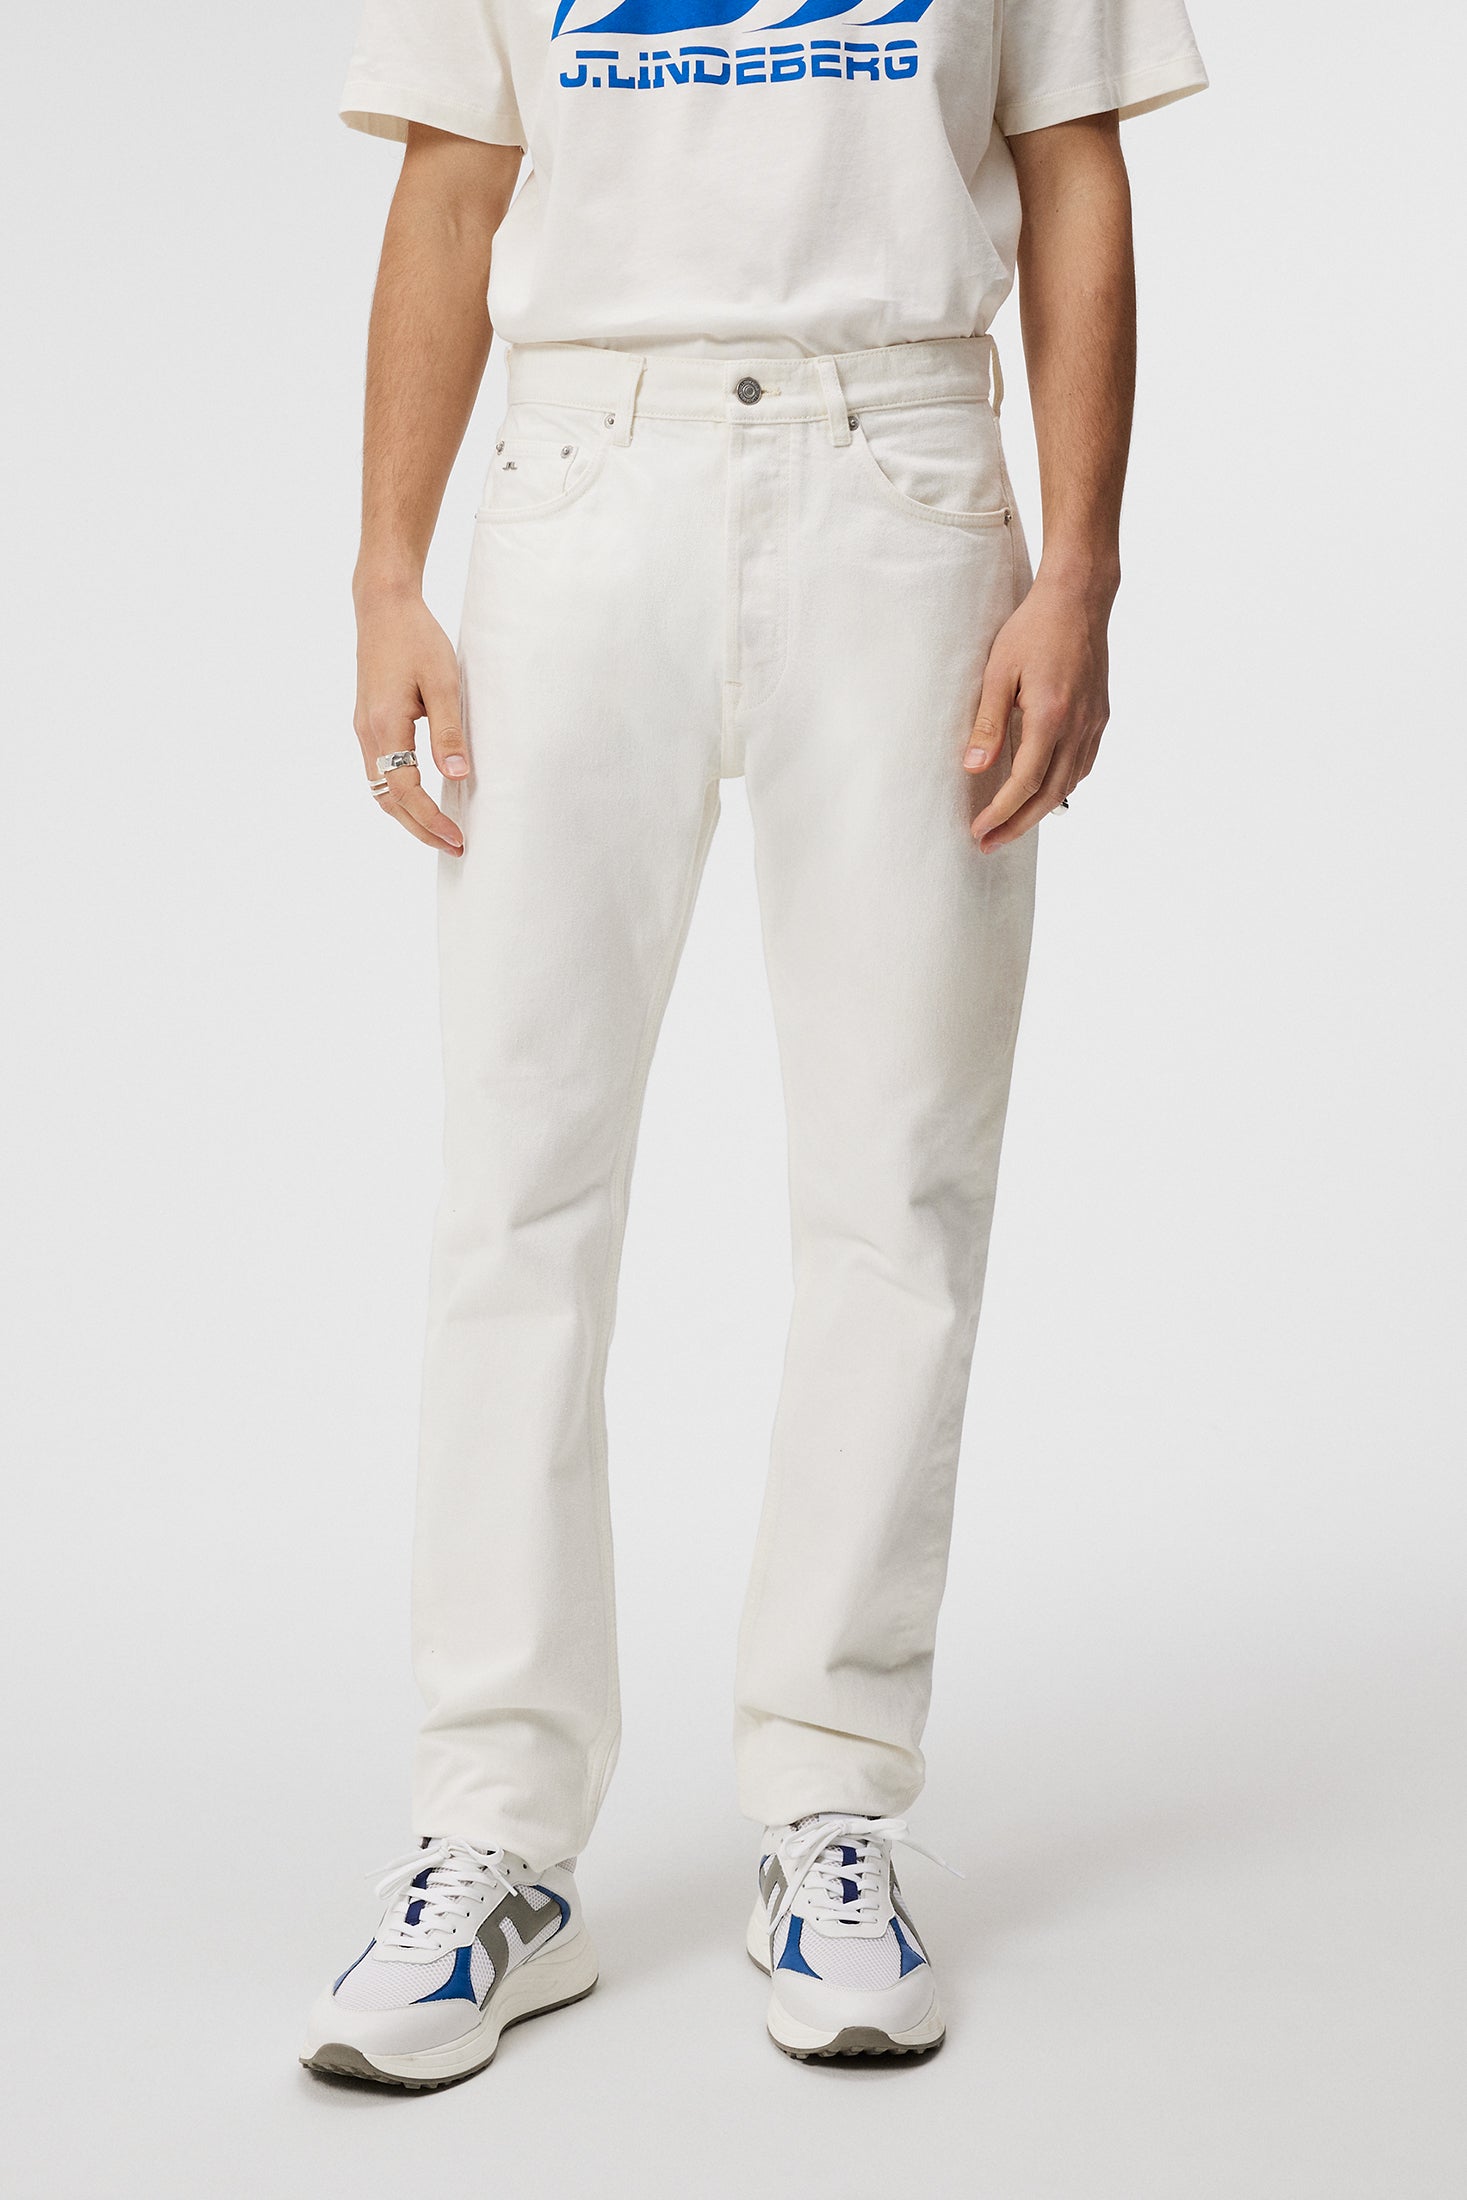 제이린드버그 J.LINDEBERG Cody Solid Regular Jeans,Cloud White